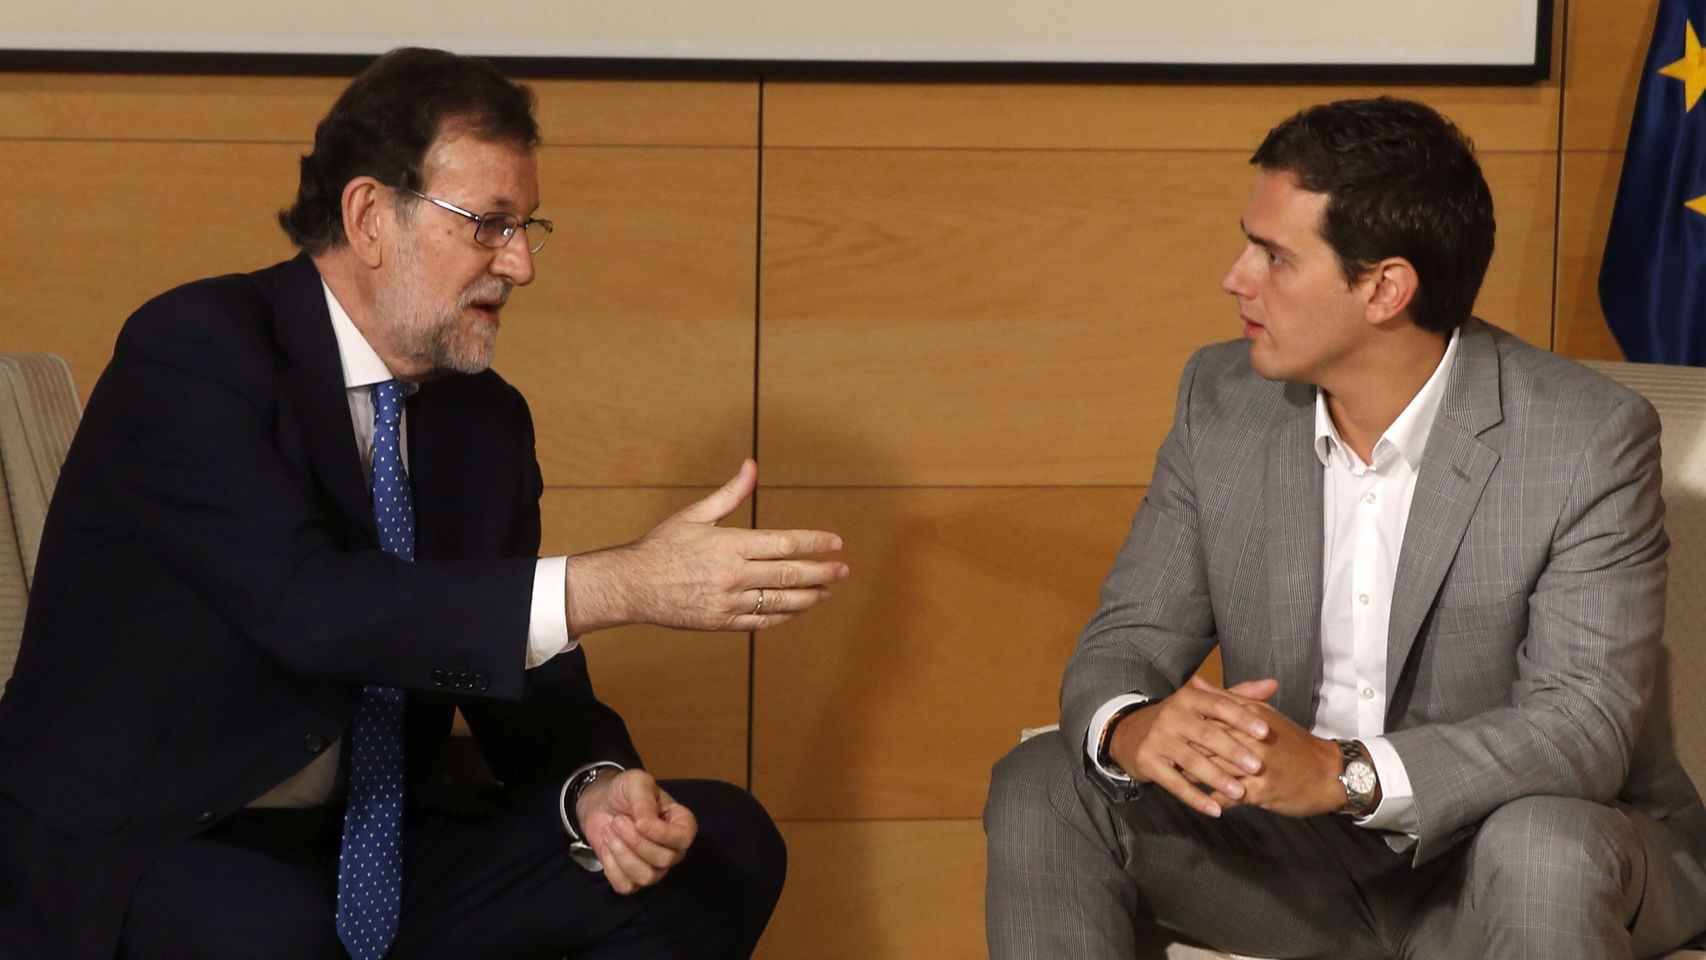 El presidente del Gobierno, Mariano Rajoy, y el líder de Ciudadanos, Albert Rivera